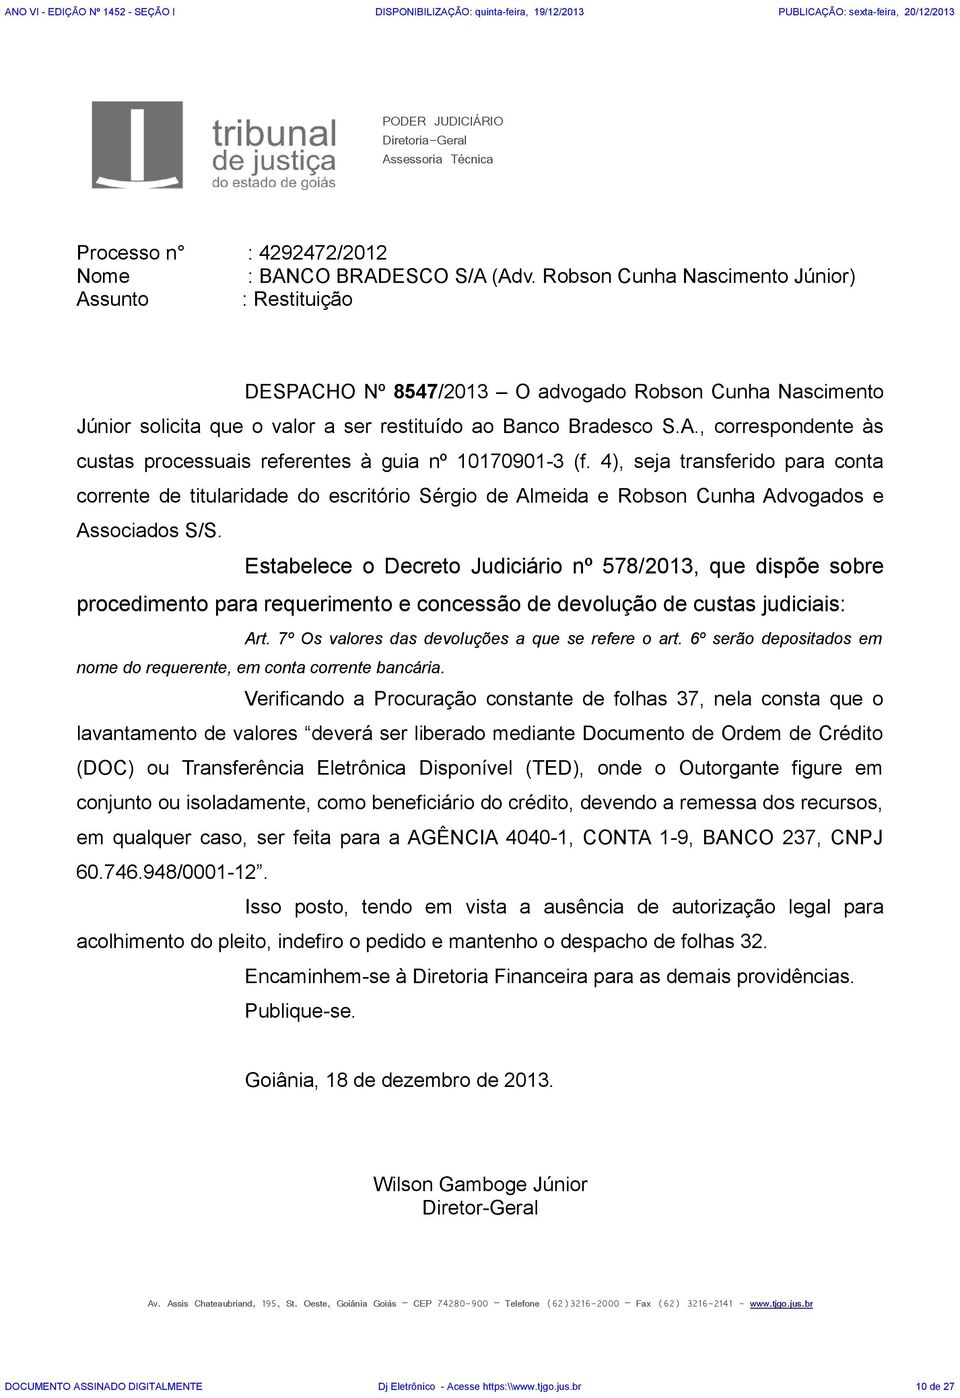 4), seja transferido para conta corrente de titularidade do escritório Sérgio de Almeida e Robson Cunha Advogados e Associados S/S.